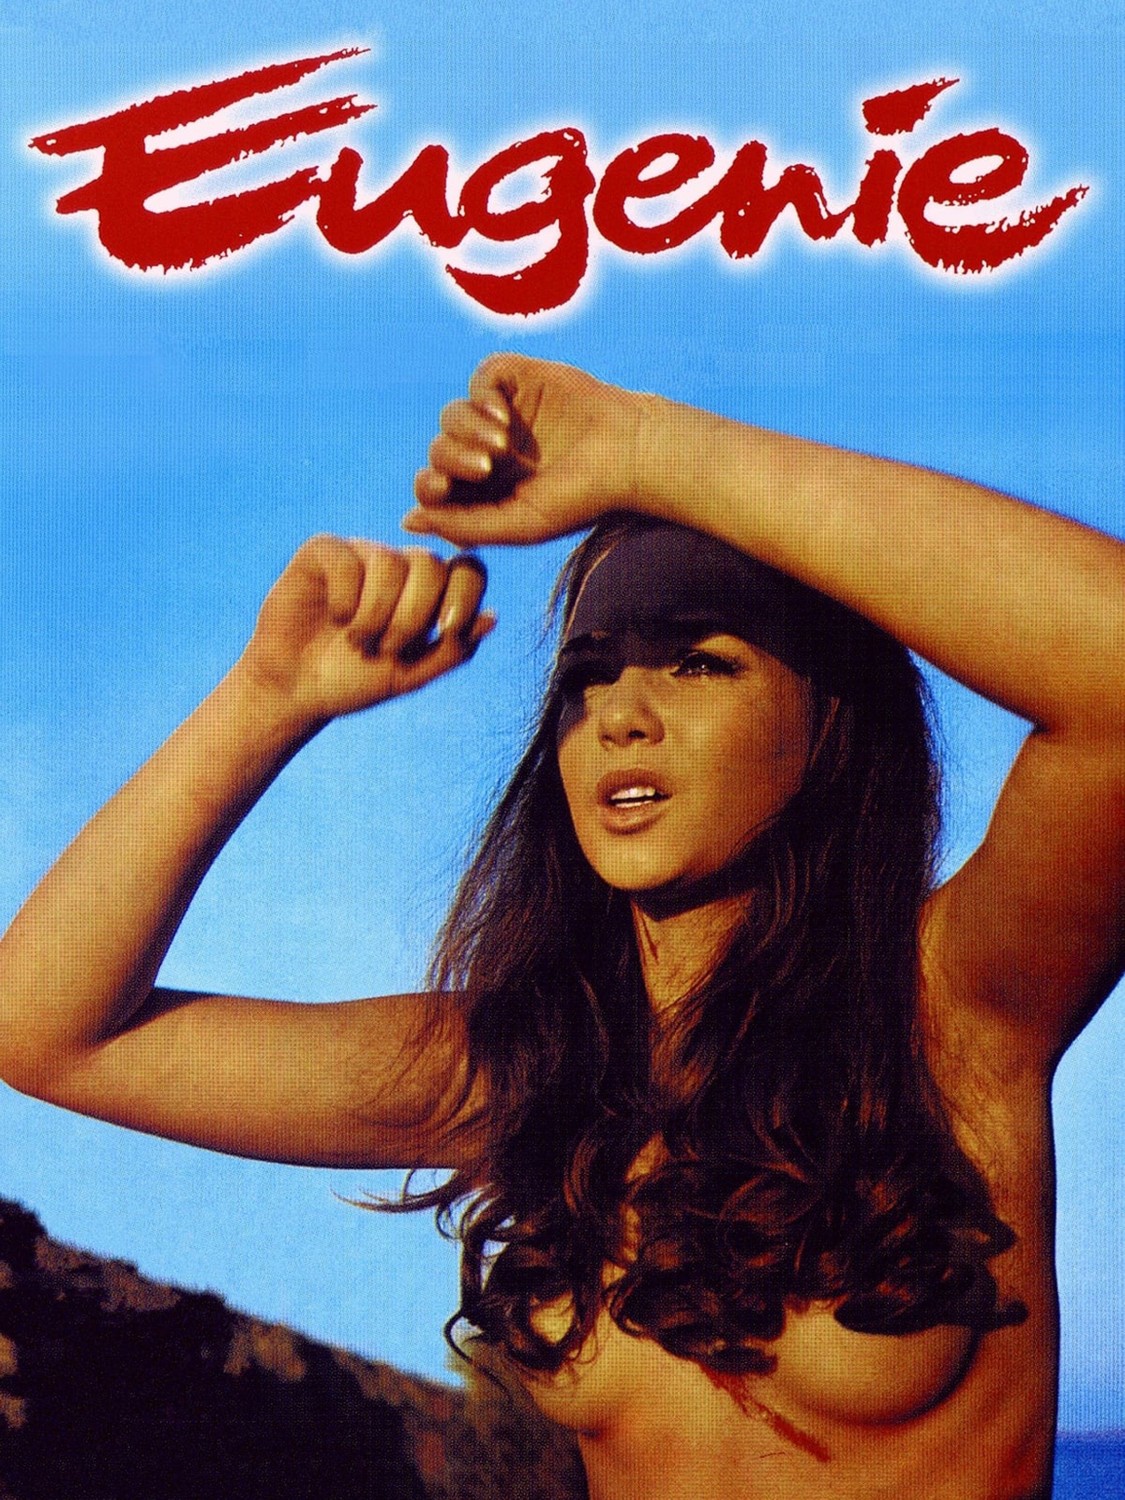 Eugenie - De Sade 70 - Eugenie (1970)